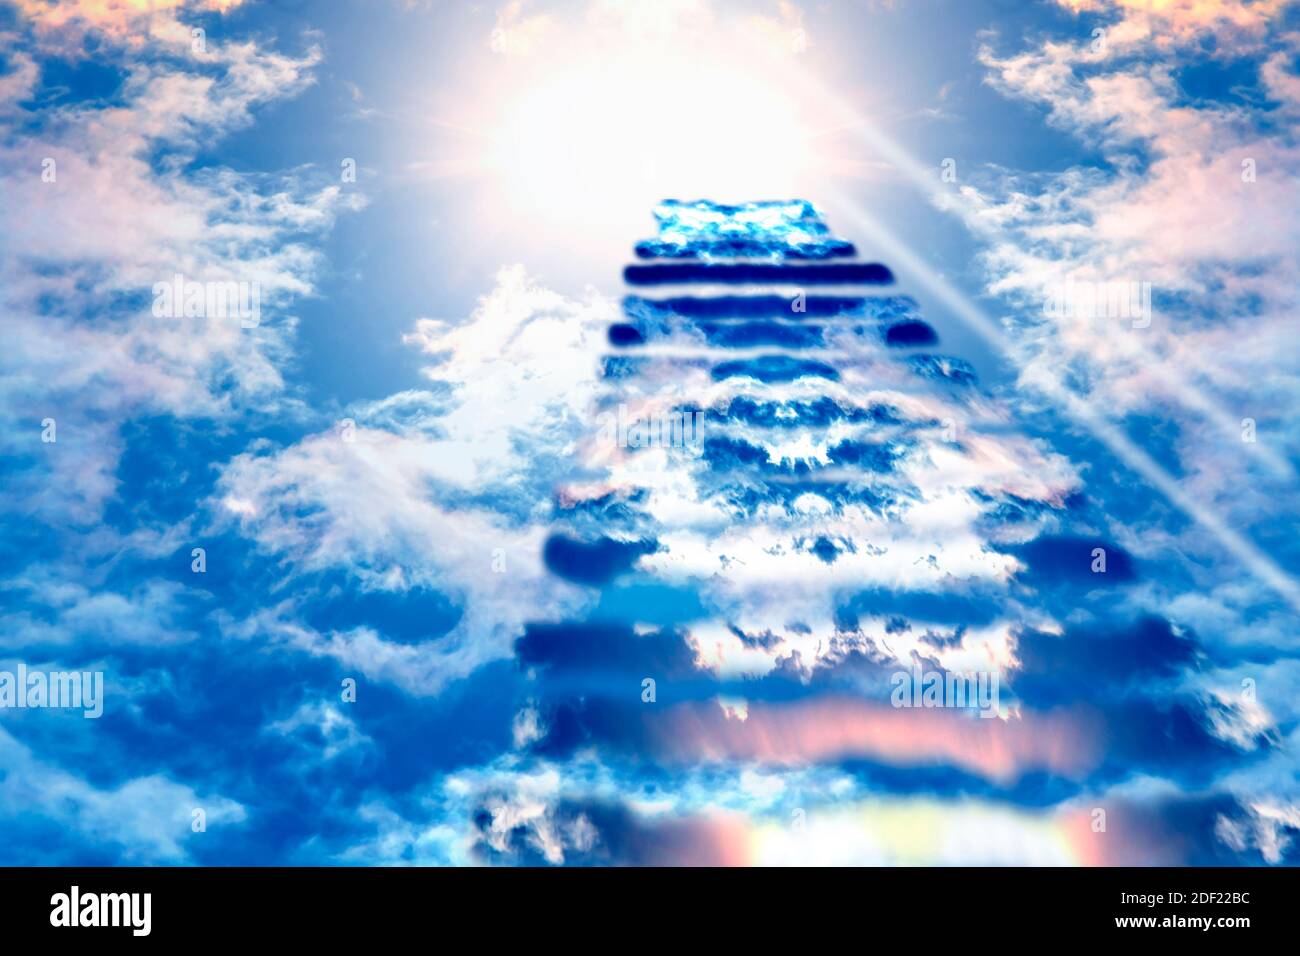 Staircase to Heaven. Religious background. Stock Photo